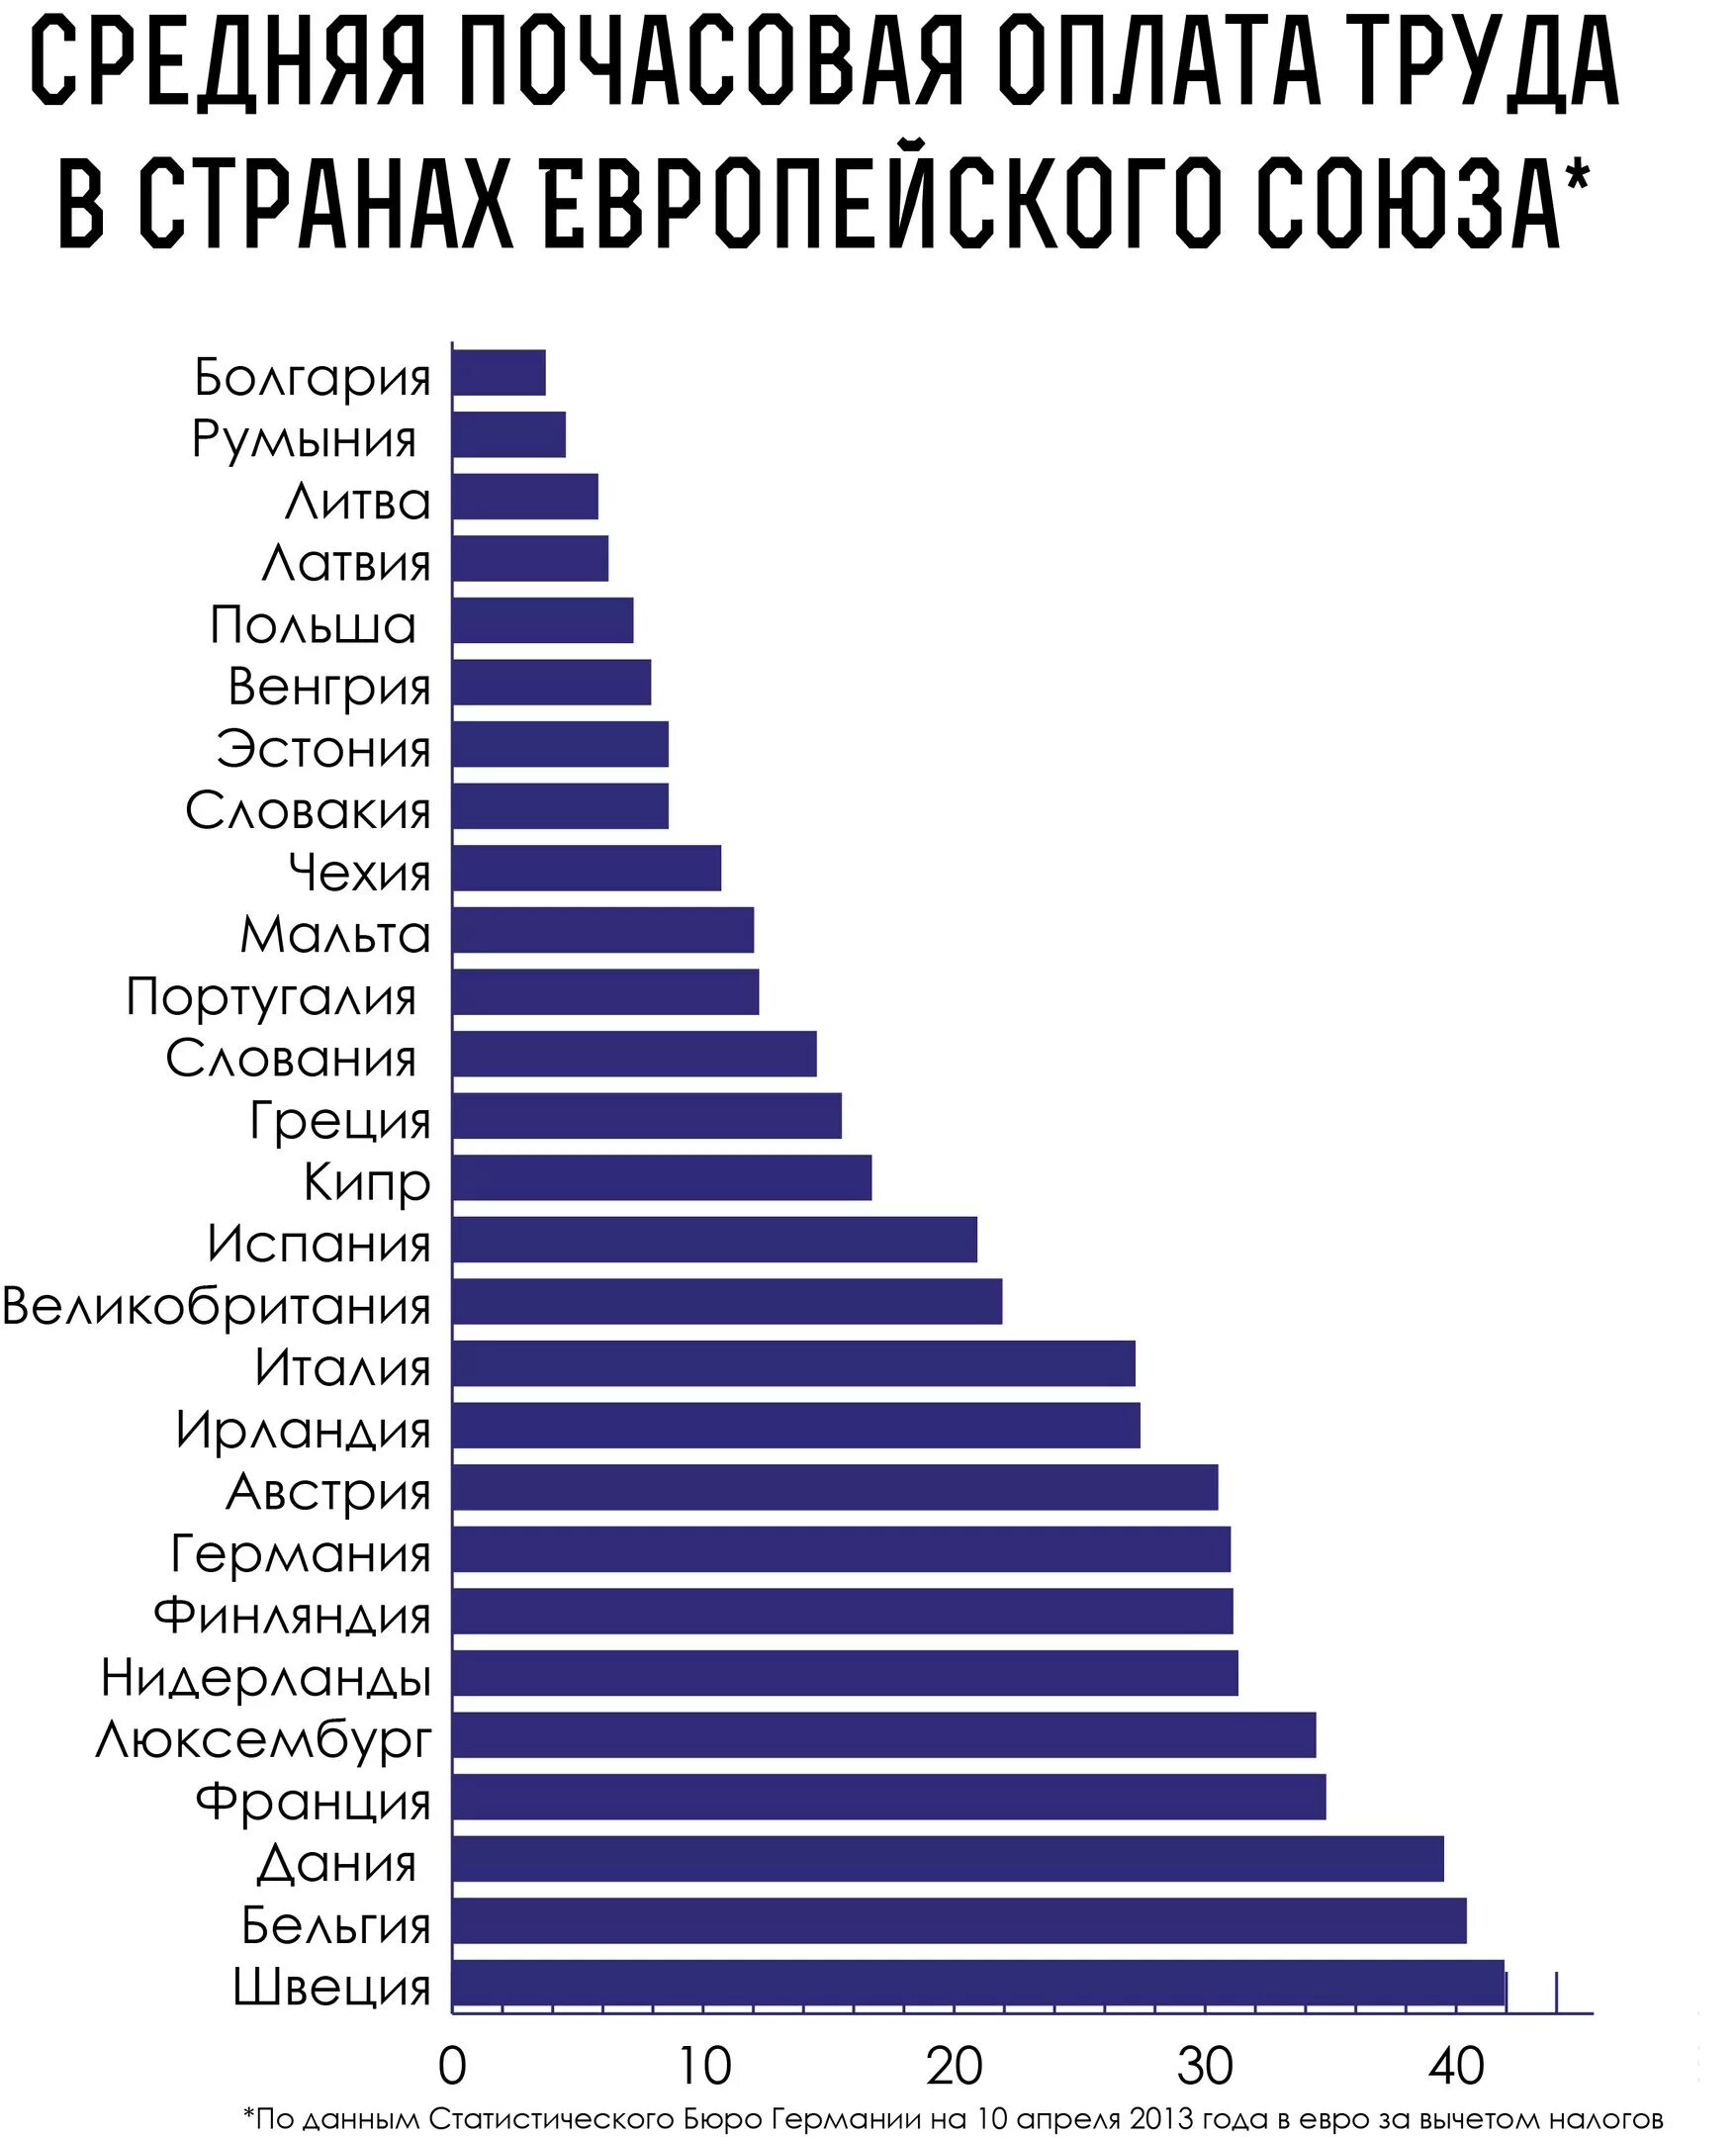 Минимальная ставка в час. Средняя почасовая оплата труда. Средняя почасовая оплата труда в России. Минимальная почасовая оплата труда. Средняя заработная плата в странах.